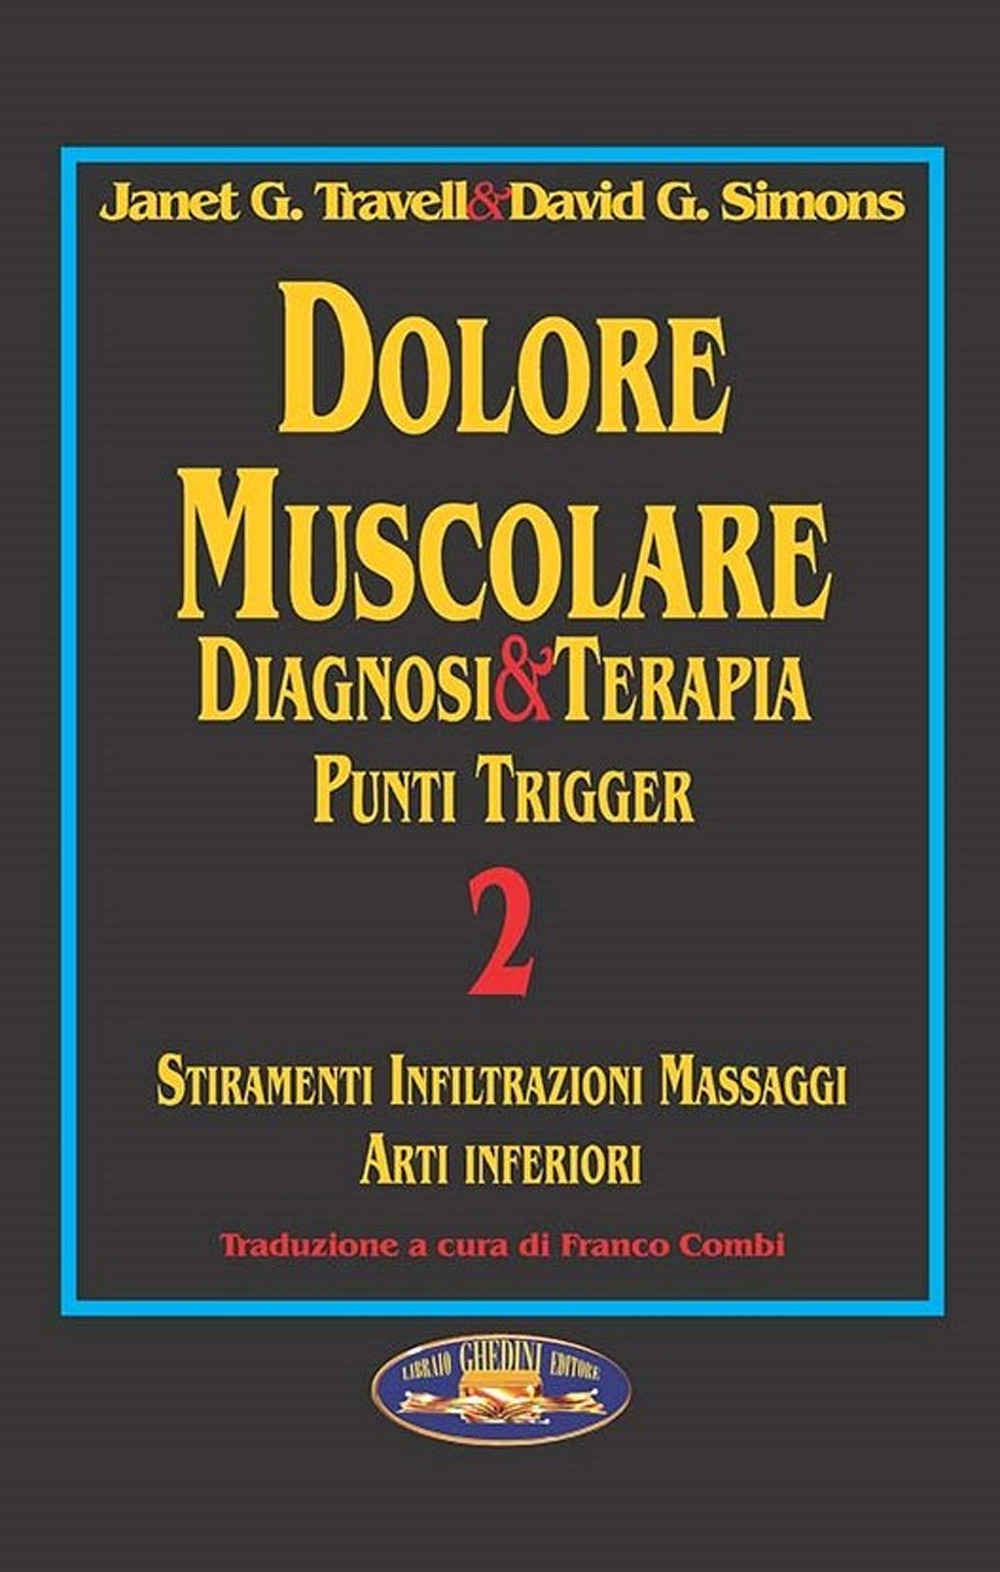 Dolore muscolare. Diagnosi & terapia. Punti trigger. Vol. 2: Stiramenti infiltrazioni massaggi. Arti inferiori